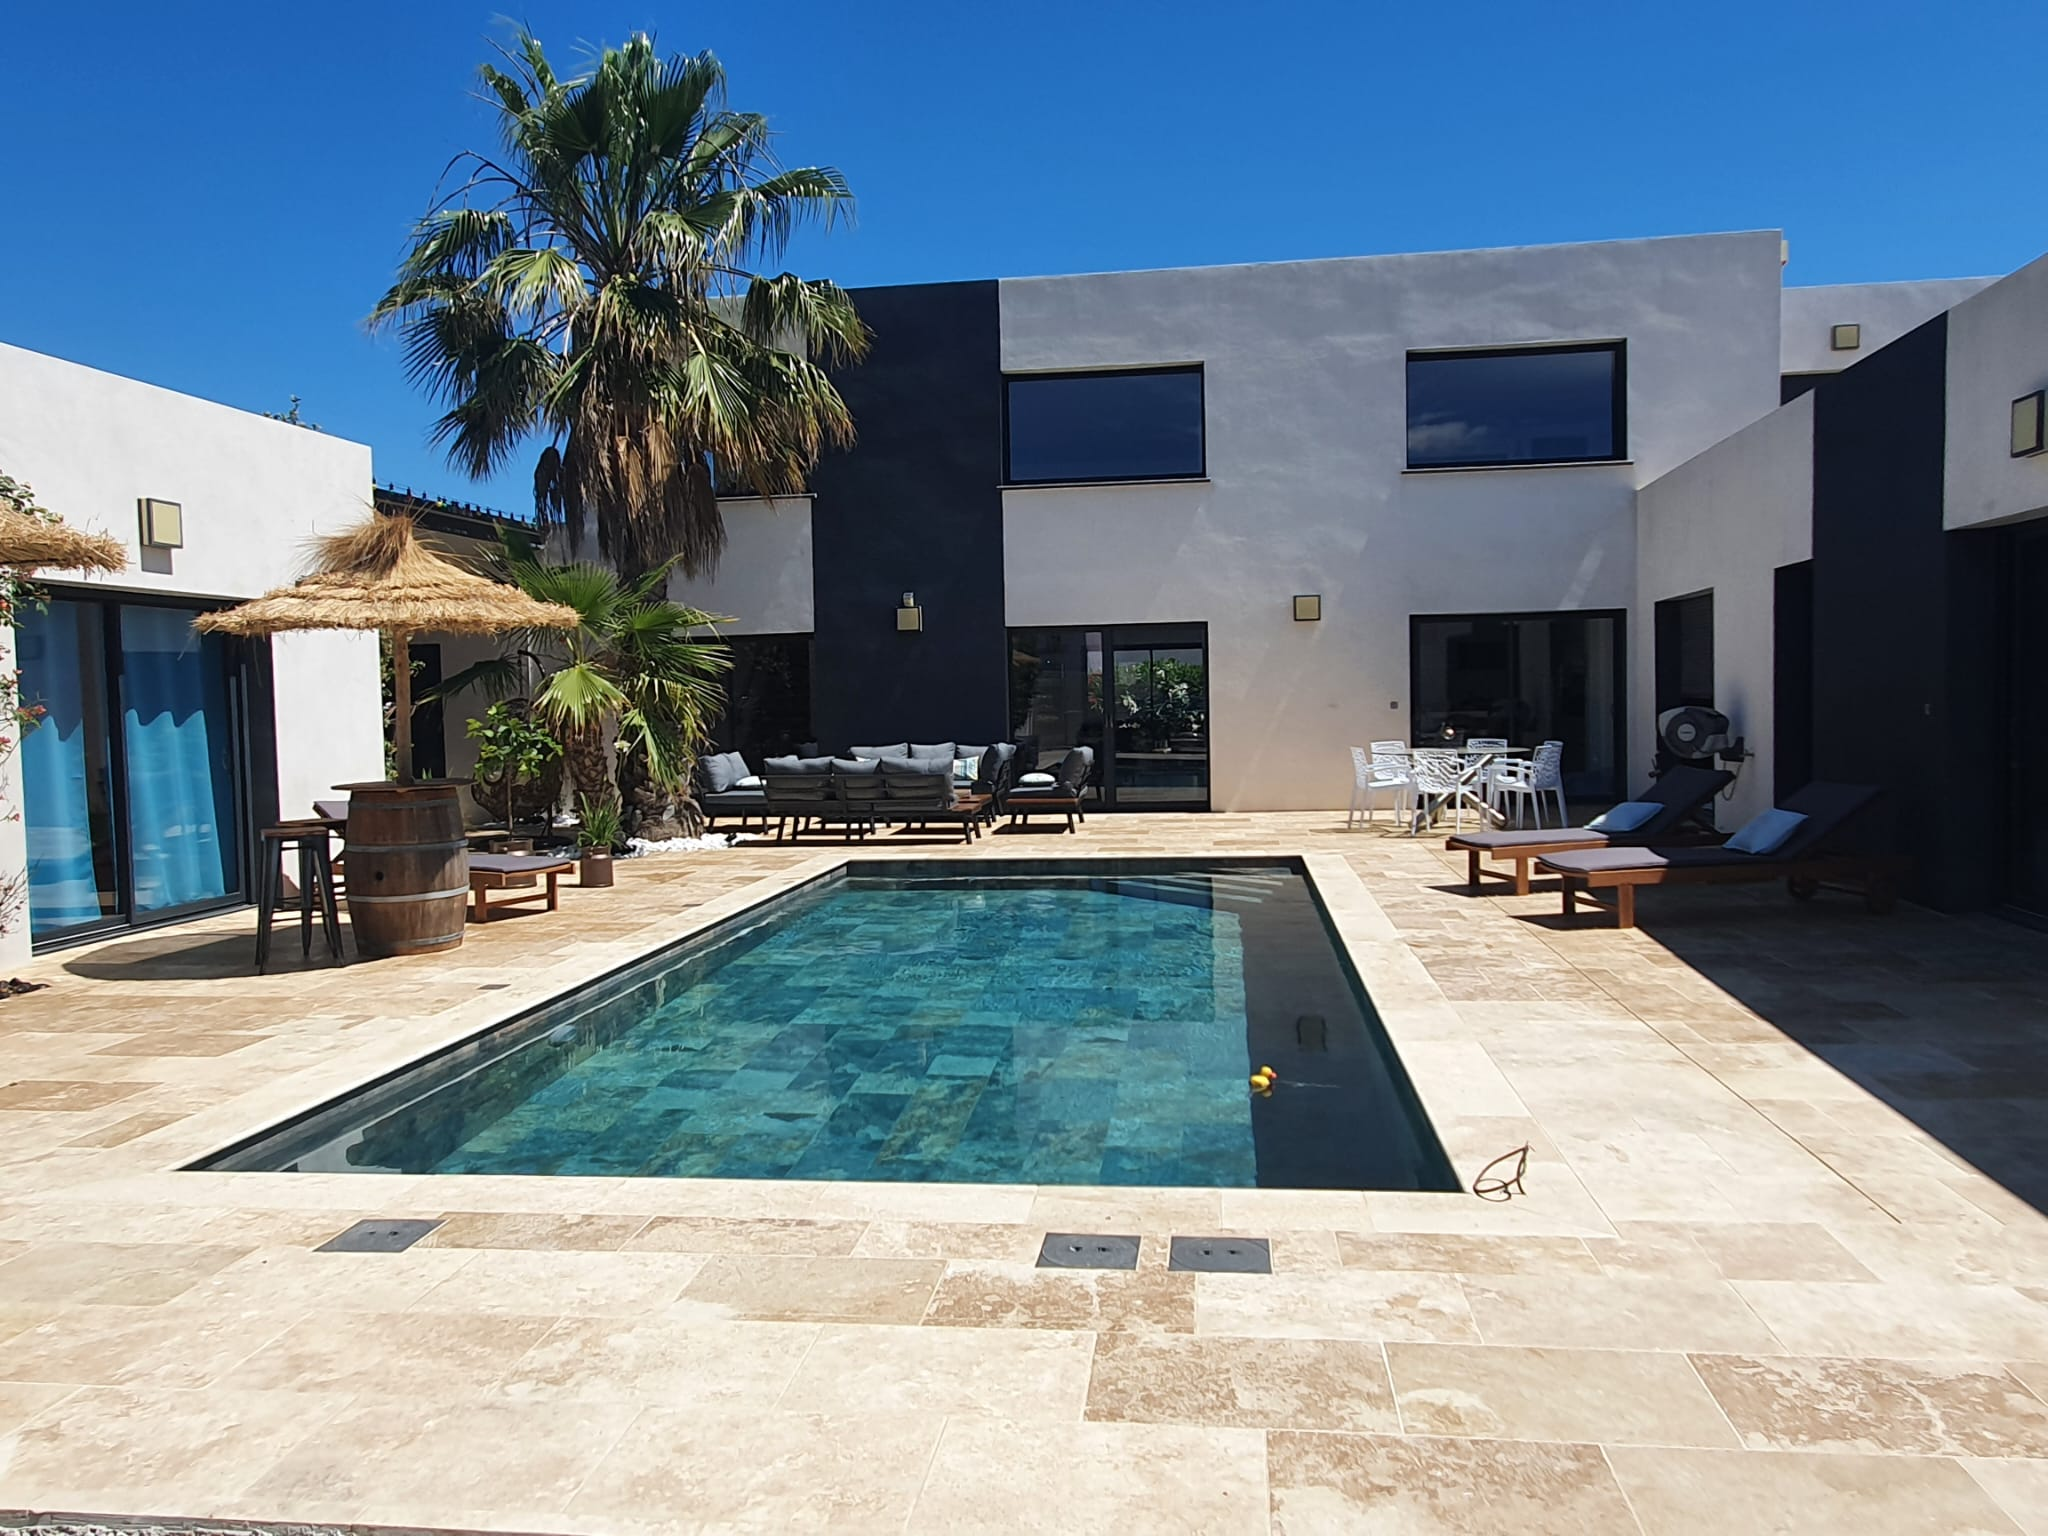 Carrelage aspect pierre terracotta dans un espace extérieur avec mobilier de jardin, palmiers et piscine sur fond de maison moderne grise